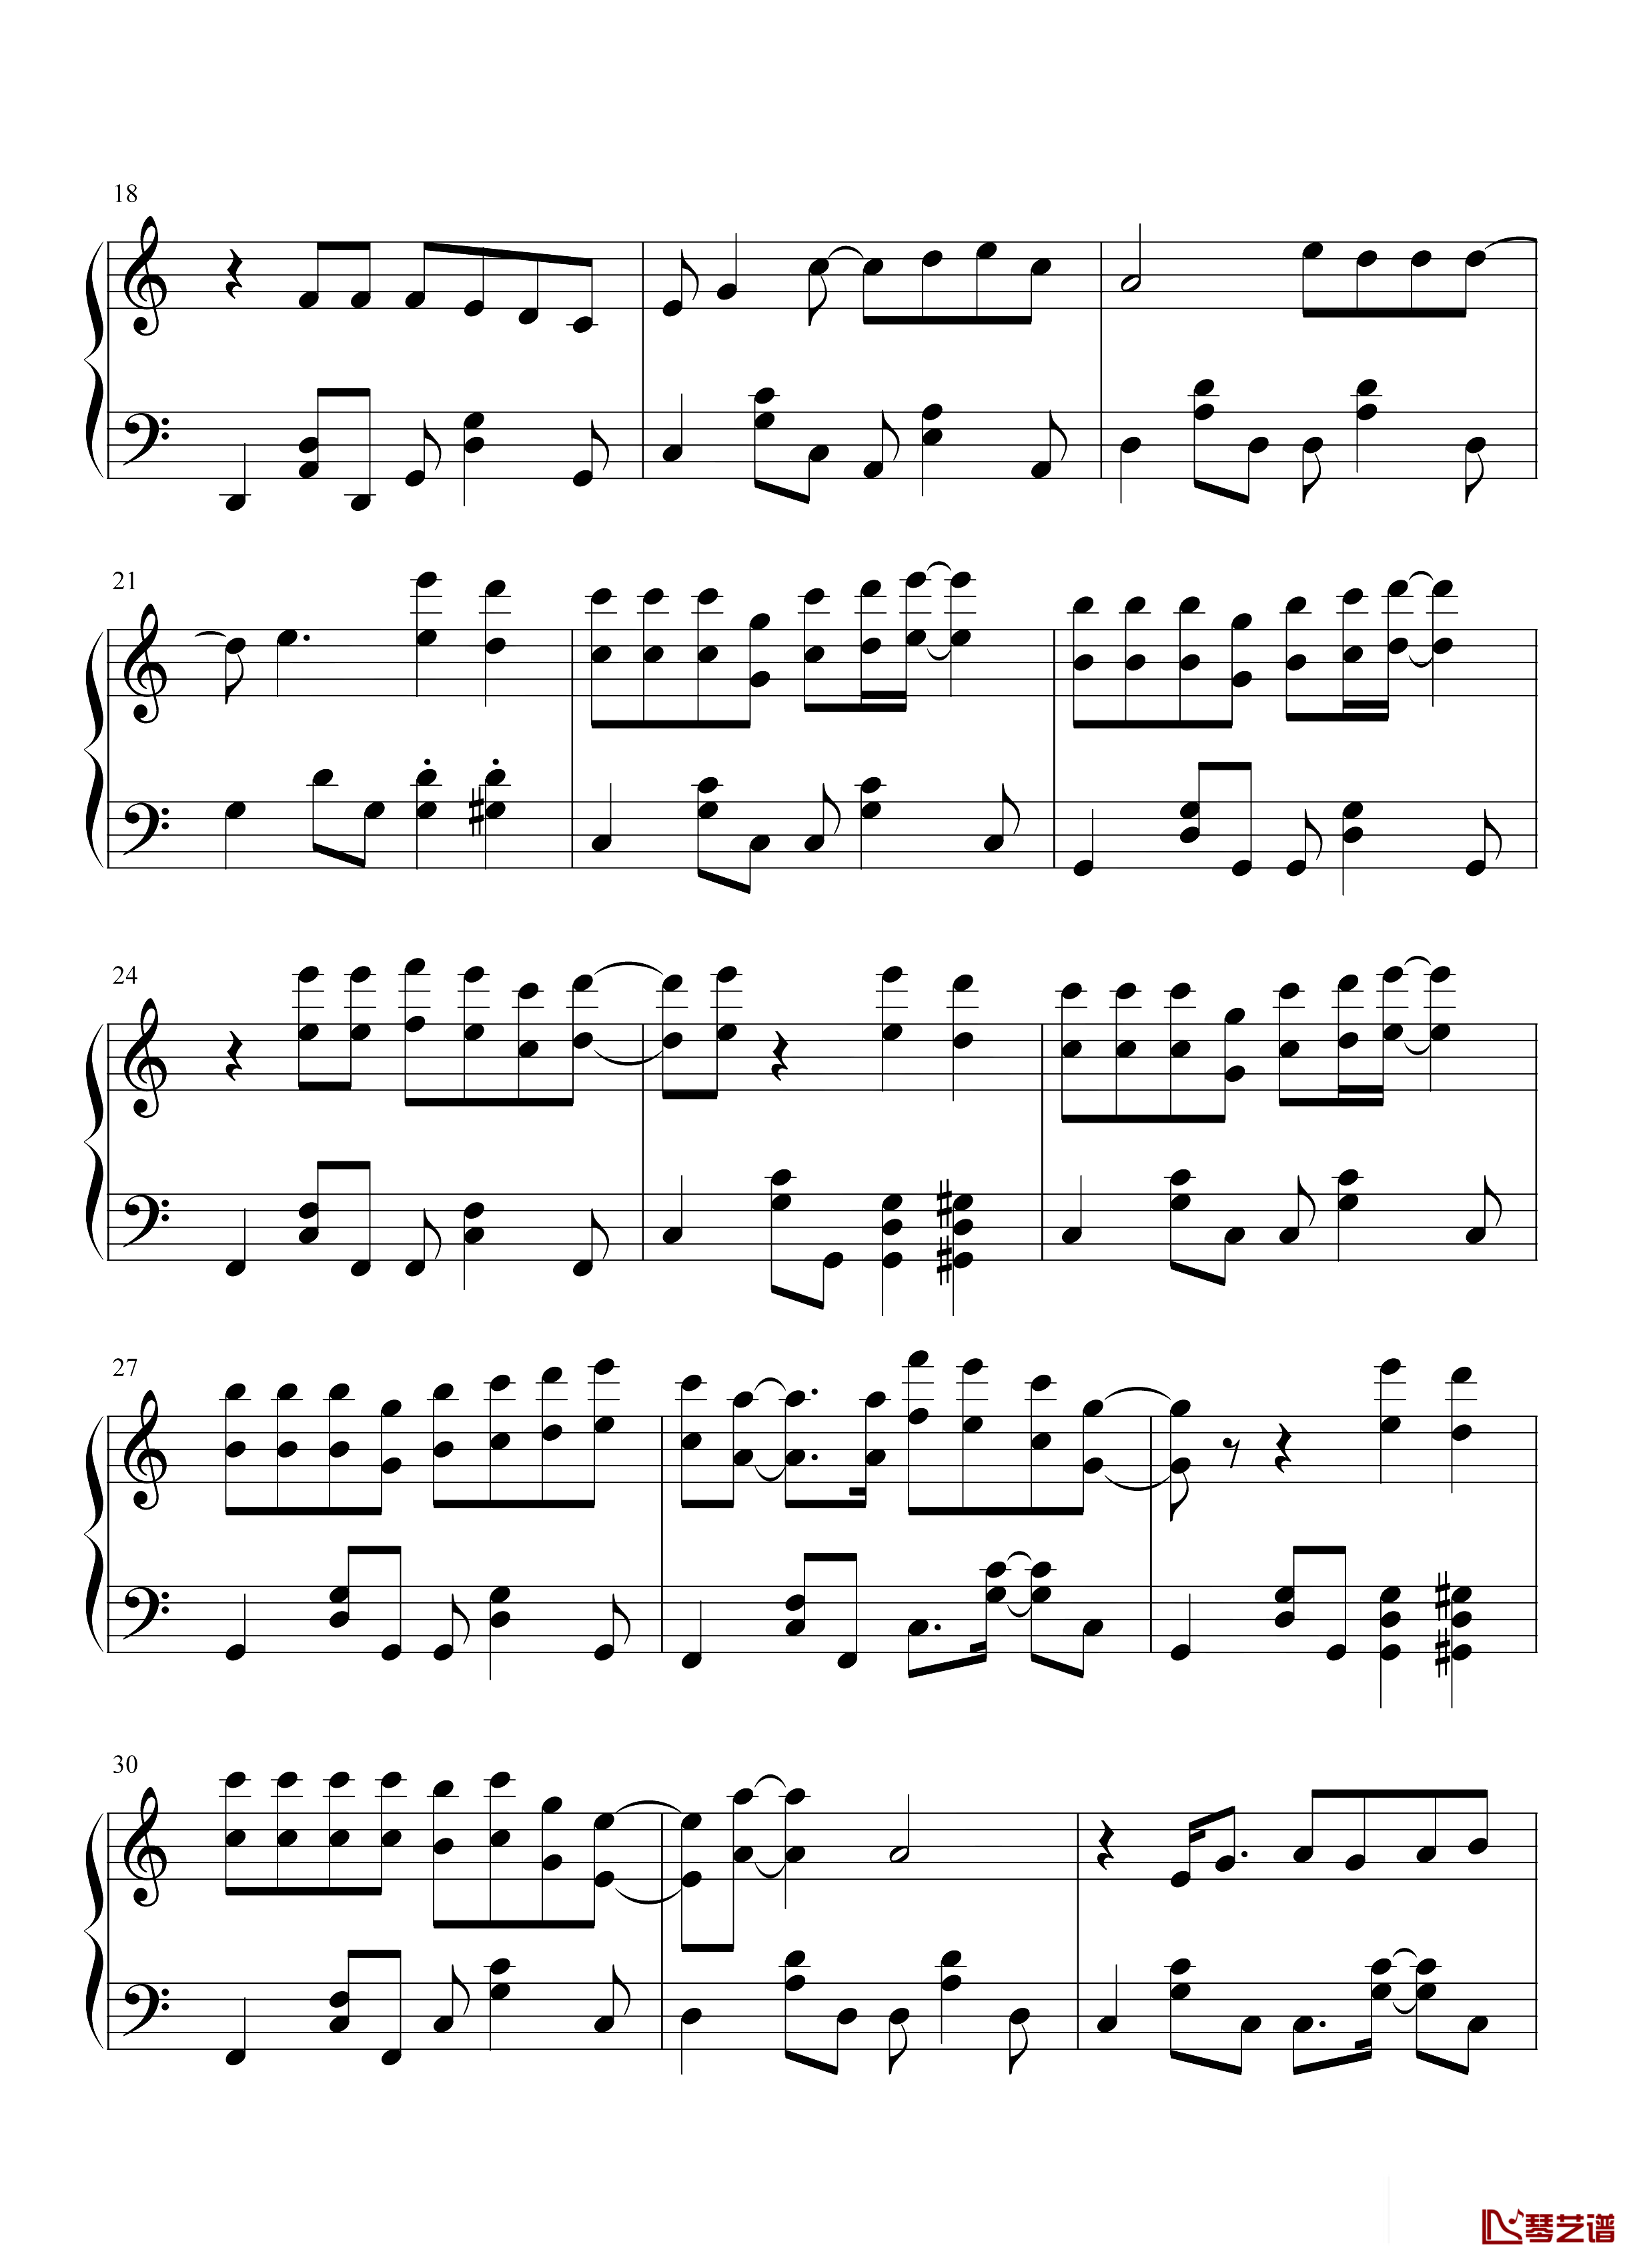 钢琴谱唯一-王力宏-王力宏最具流行度的作品之一!2